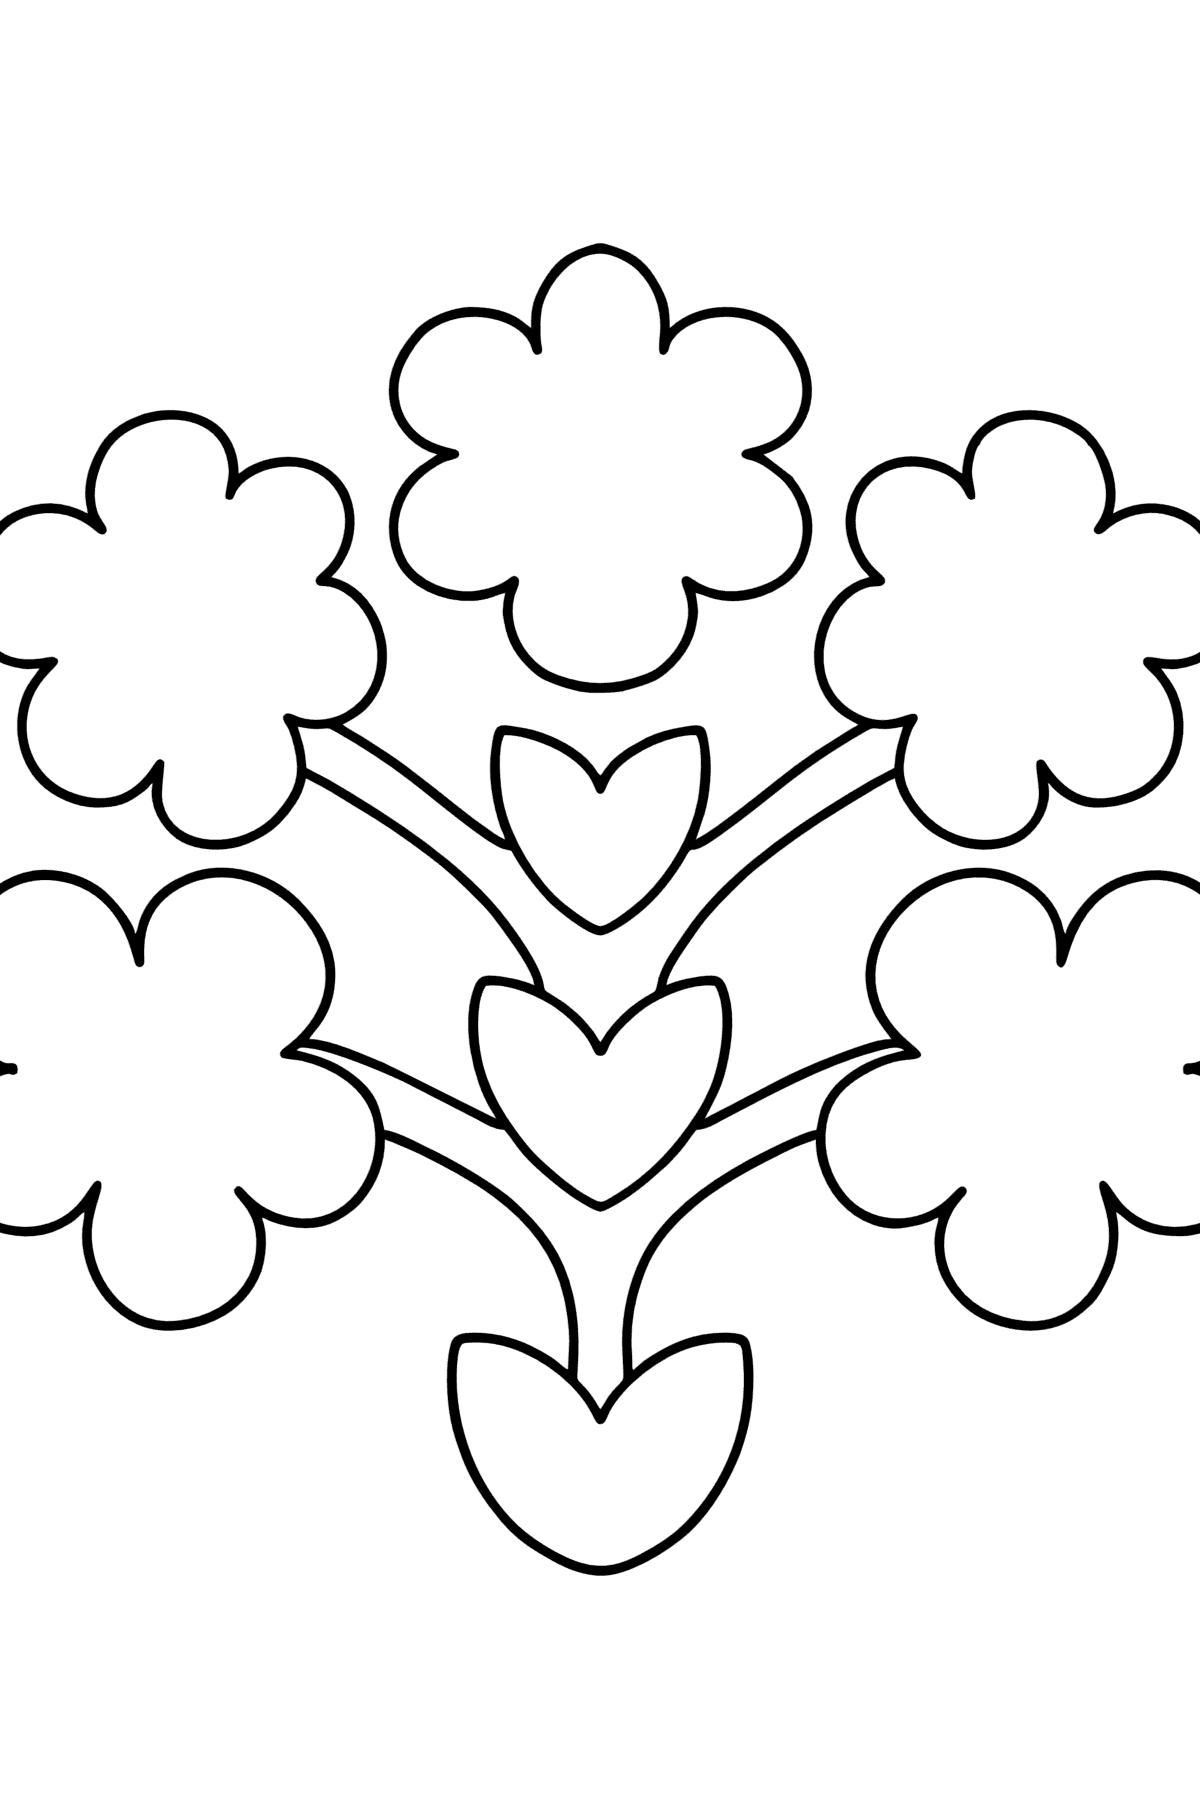 Zentangle Art Blumen Ausmalbild für Kinder - Malvorlagen für Kinder